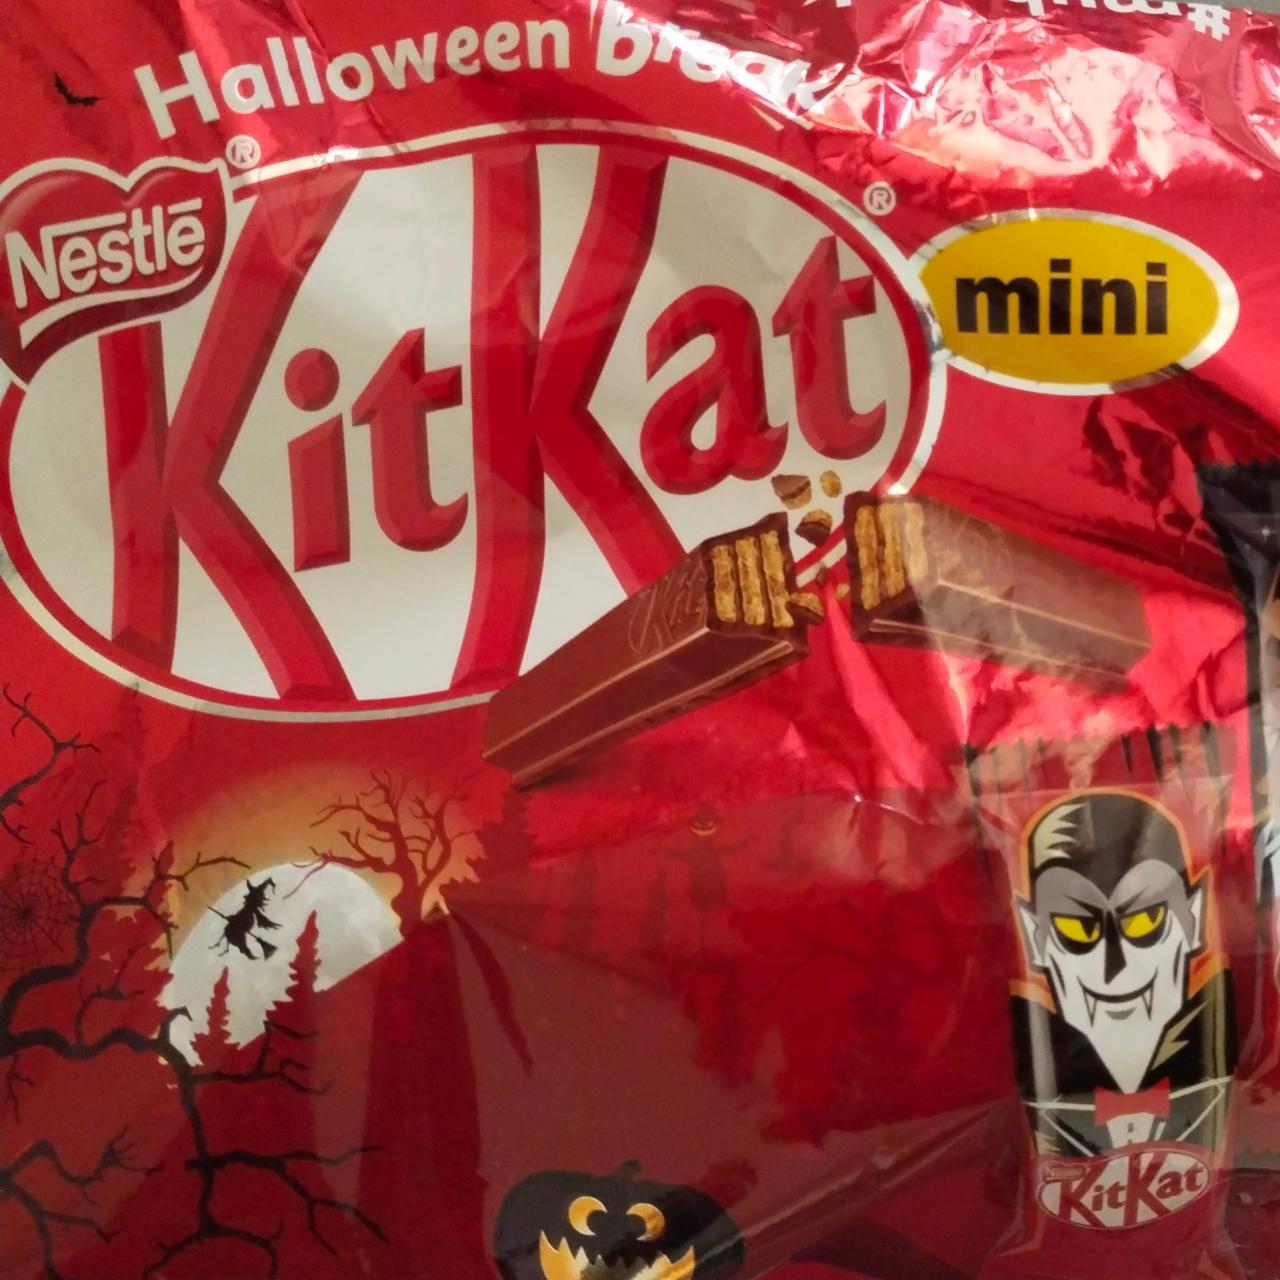 Фото - KitKat mini Nestlé